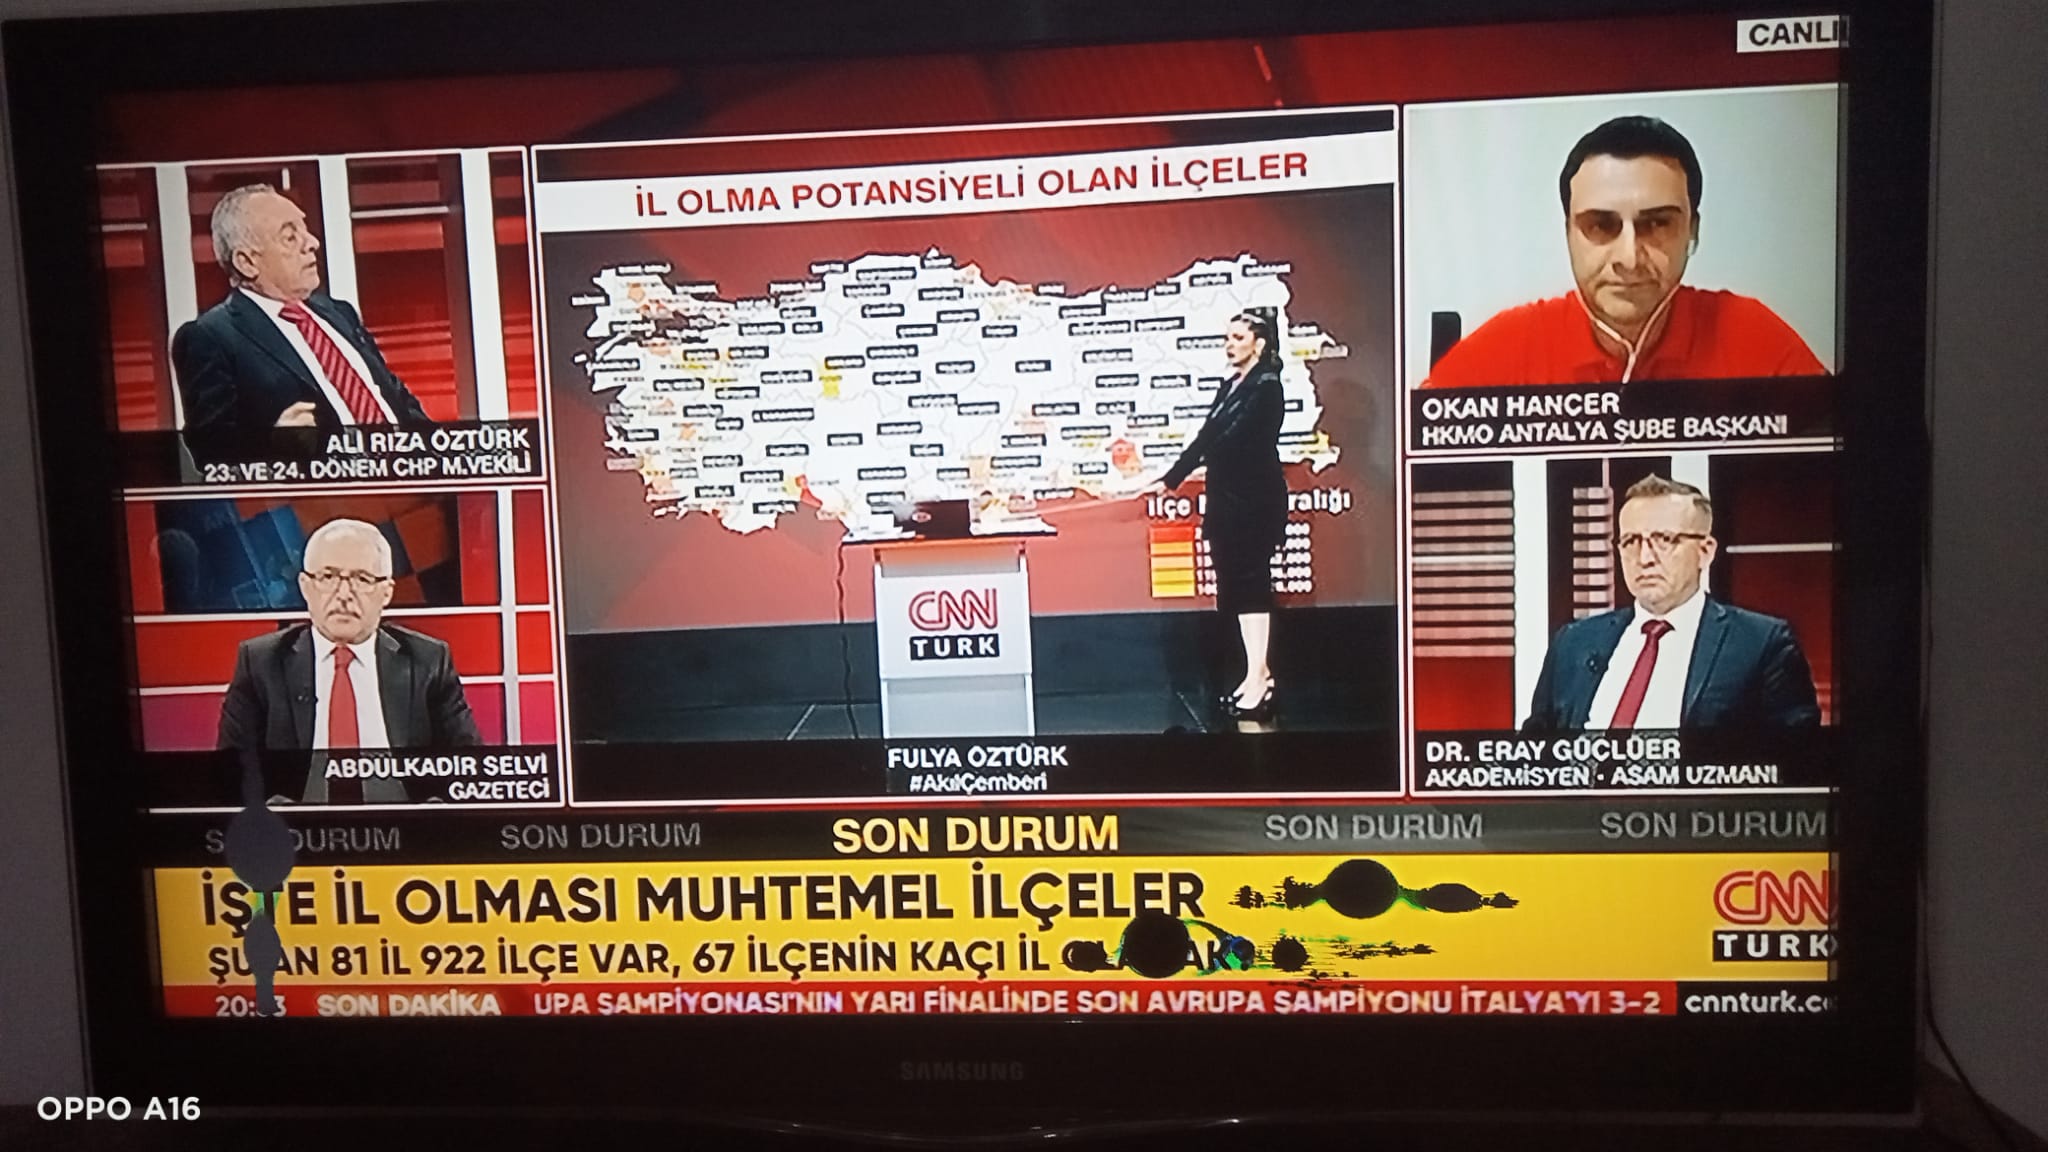 CNN TRK televizyonunda ebinkarahisar gndem oldu